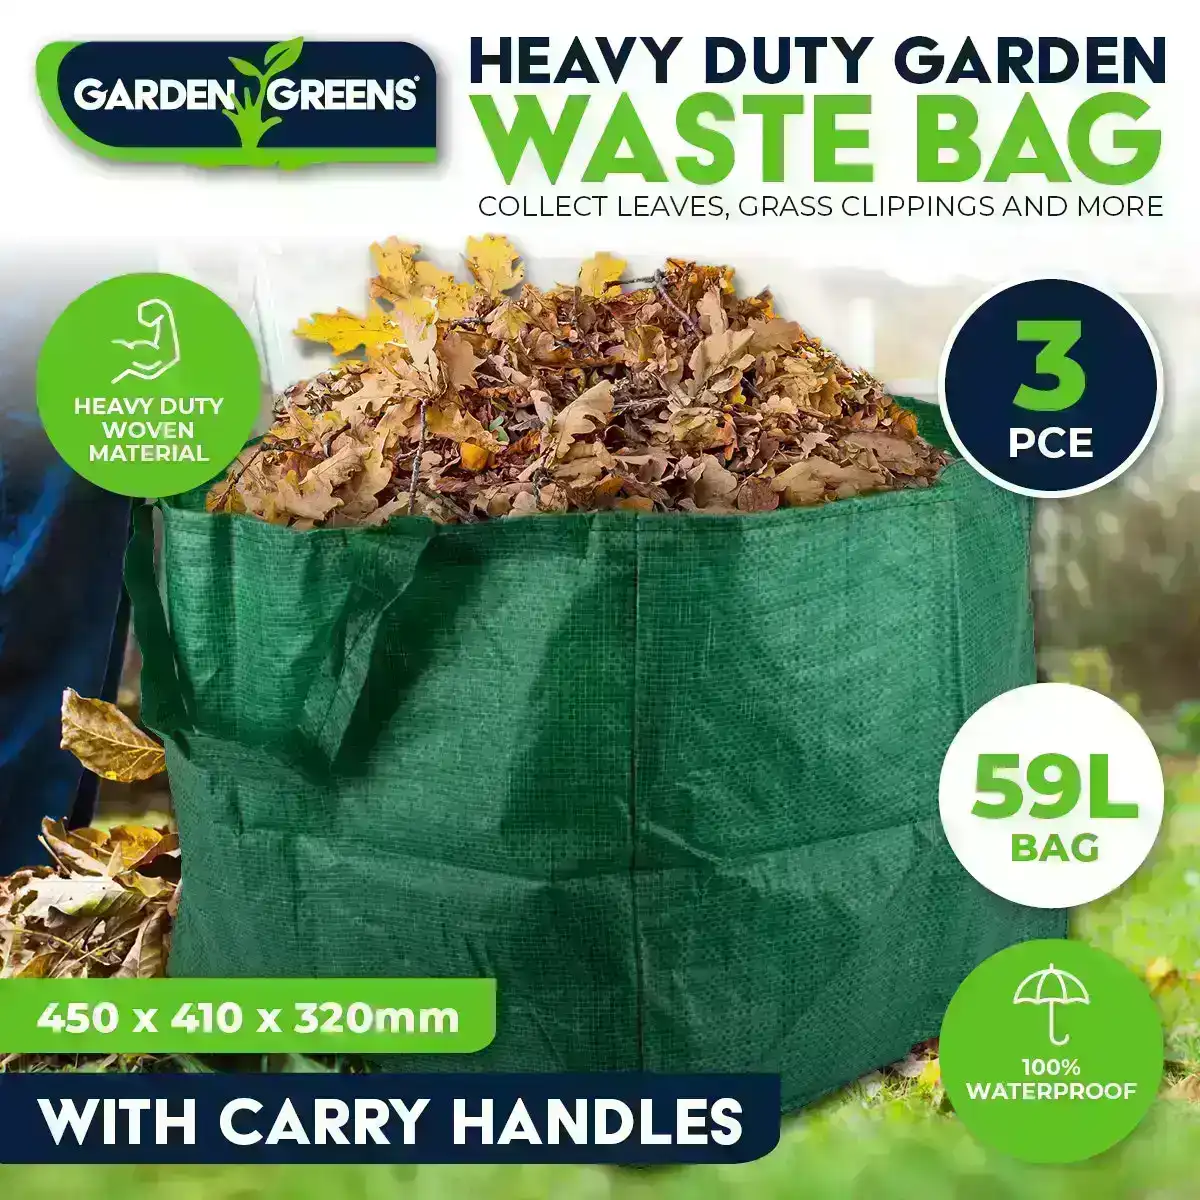 Garden Greens® 3PCE Garden Waste Bag Reusable Strong Material Lightweight 59L